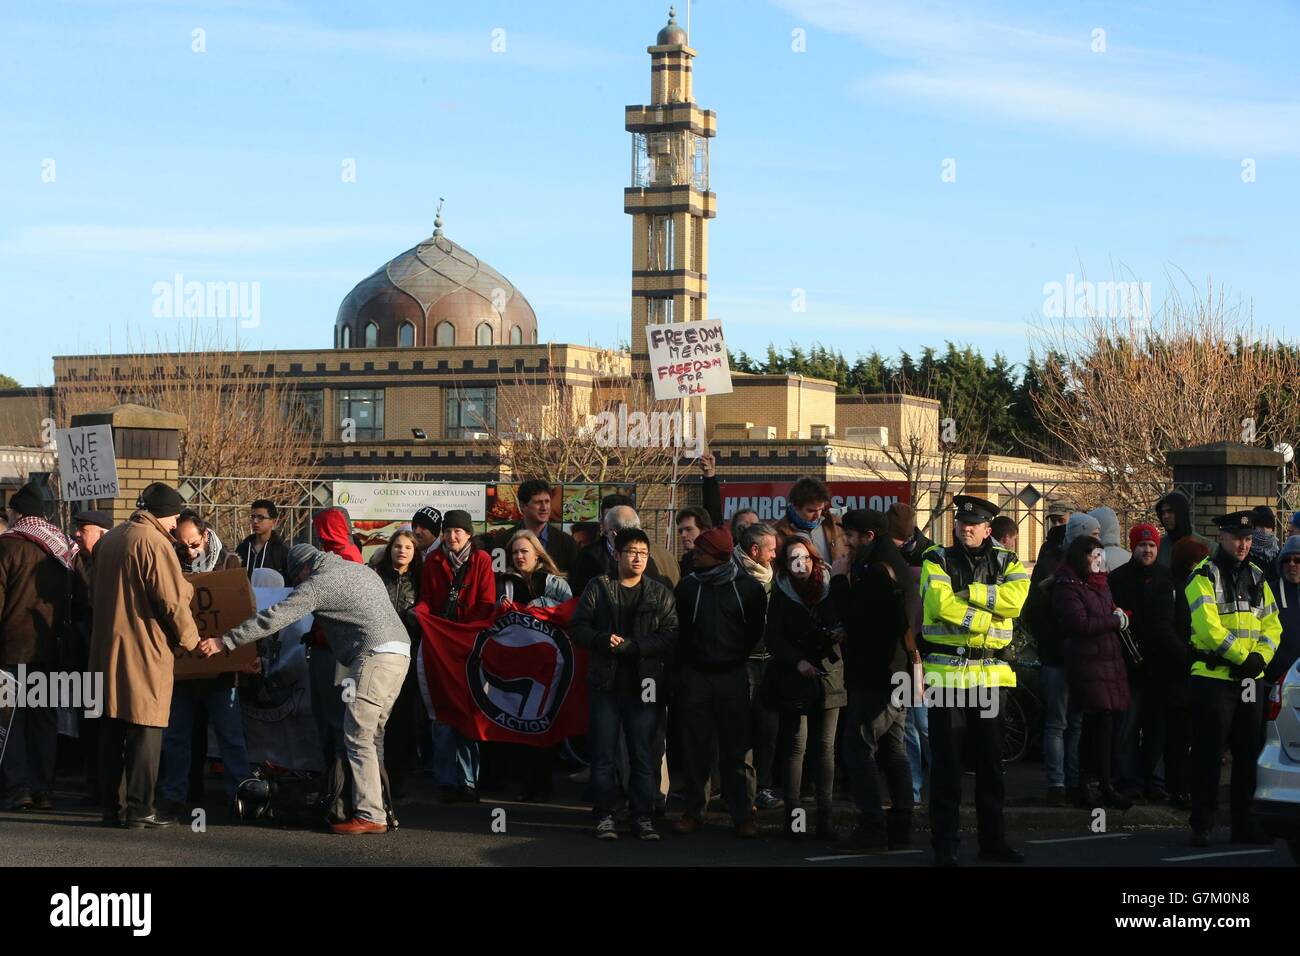 Foto. Una contro-dimostrazione da parte di musulmani e gruppi antifascisti, come una piccola manifestazione anti-Islam si svolge di fronte alla Moschea Clonskeagh a Dublino, dopo una campagna organizzata su Facebook. Foto Stock